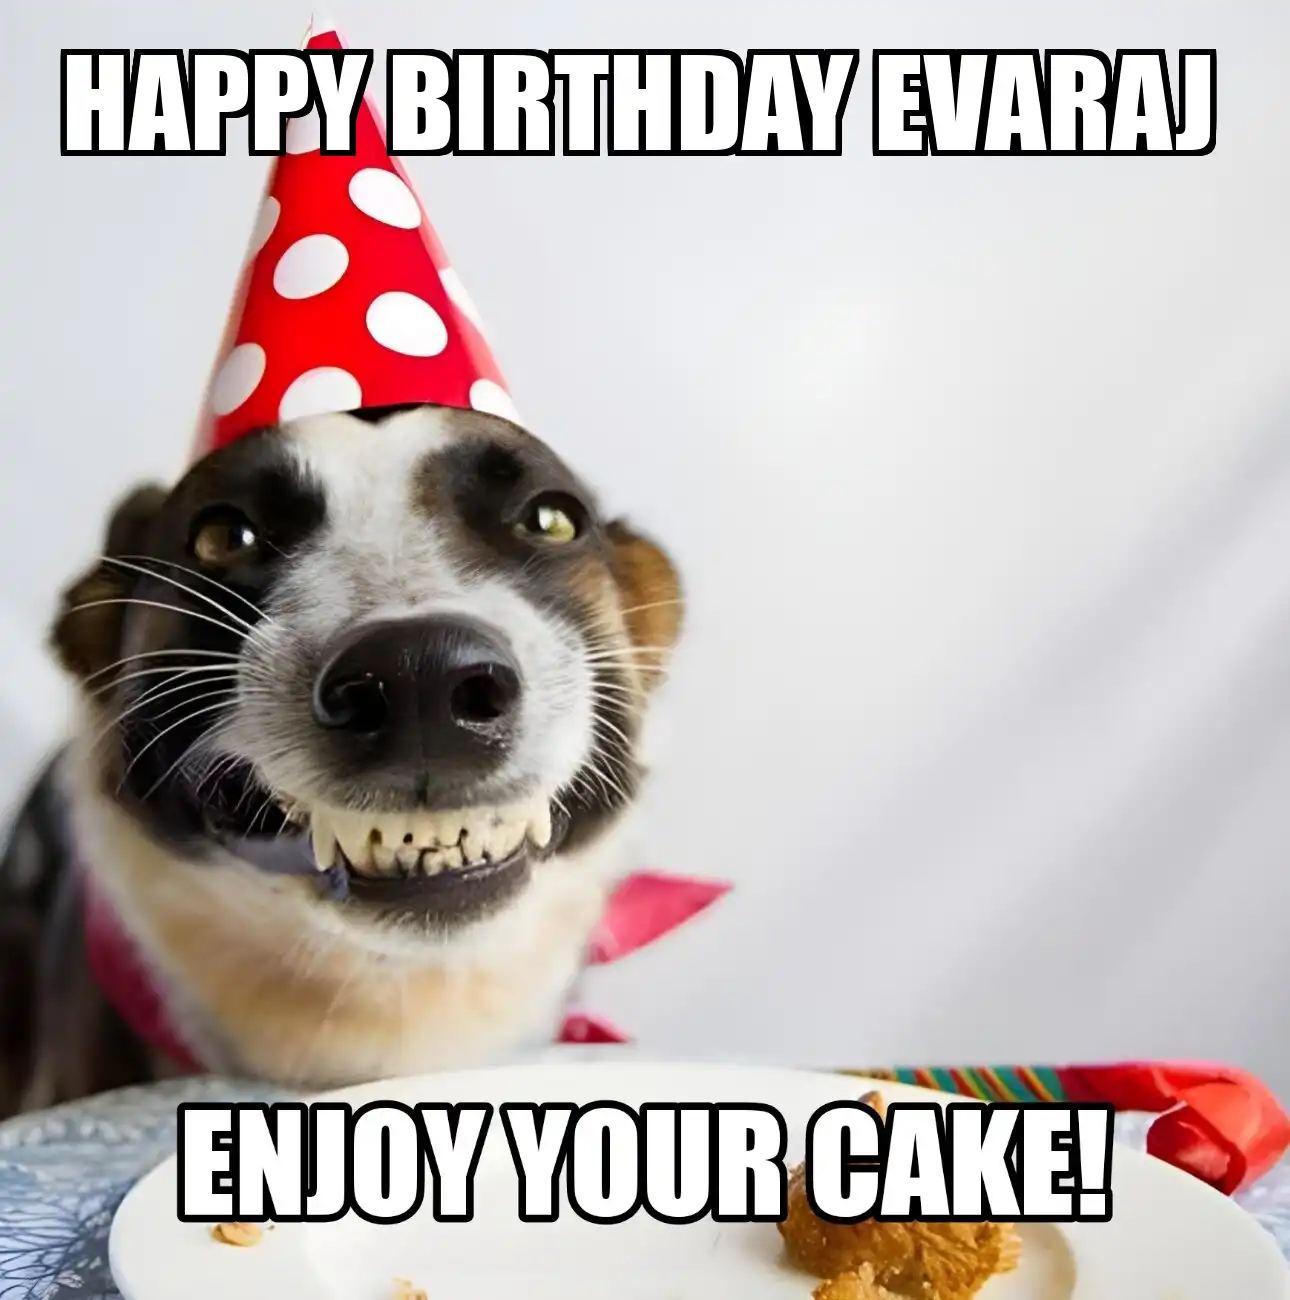 Happy Birthday Evaraj Enjoy Your Cake Dog Meme